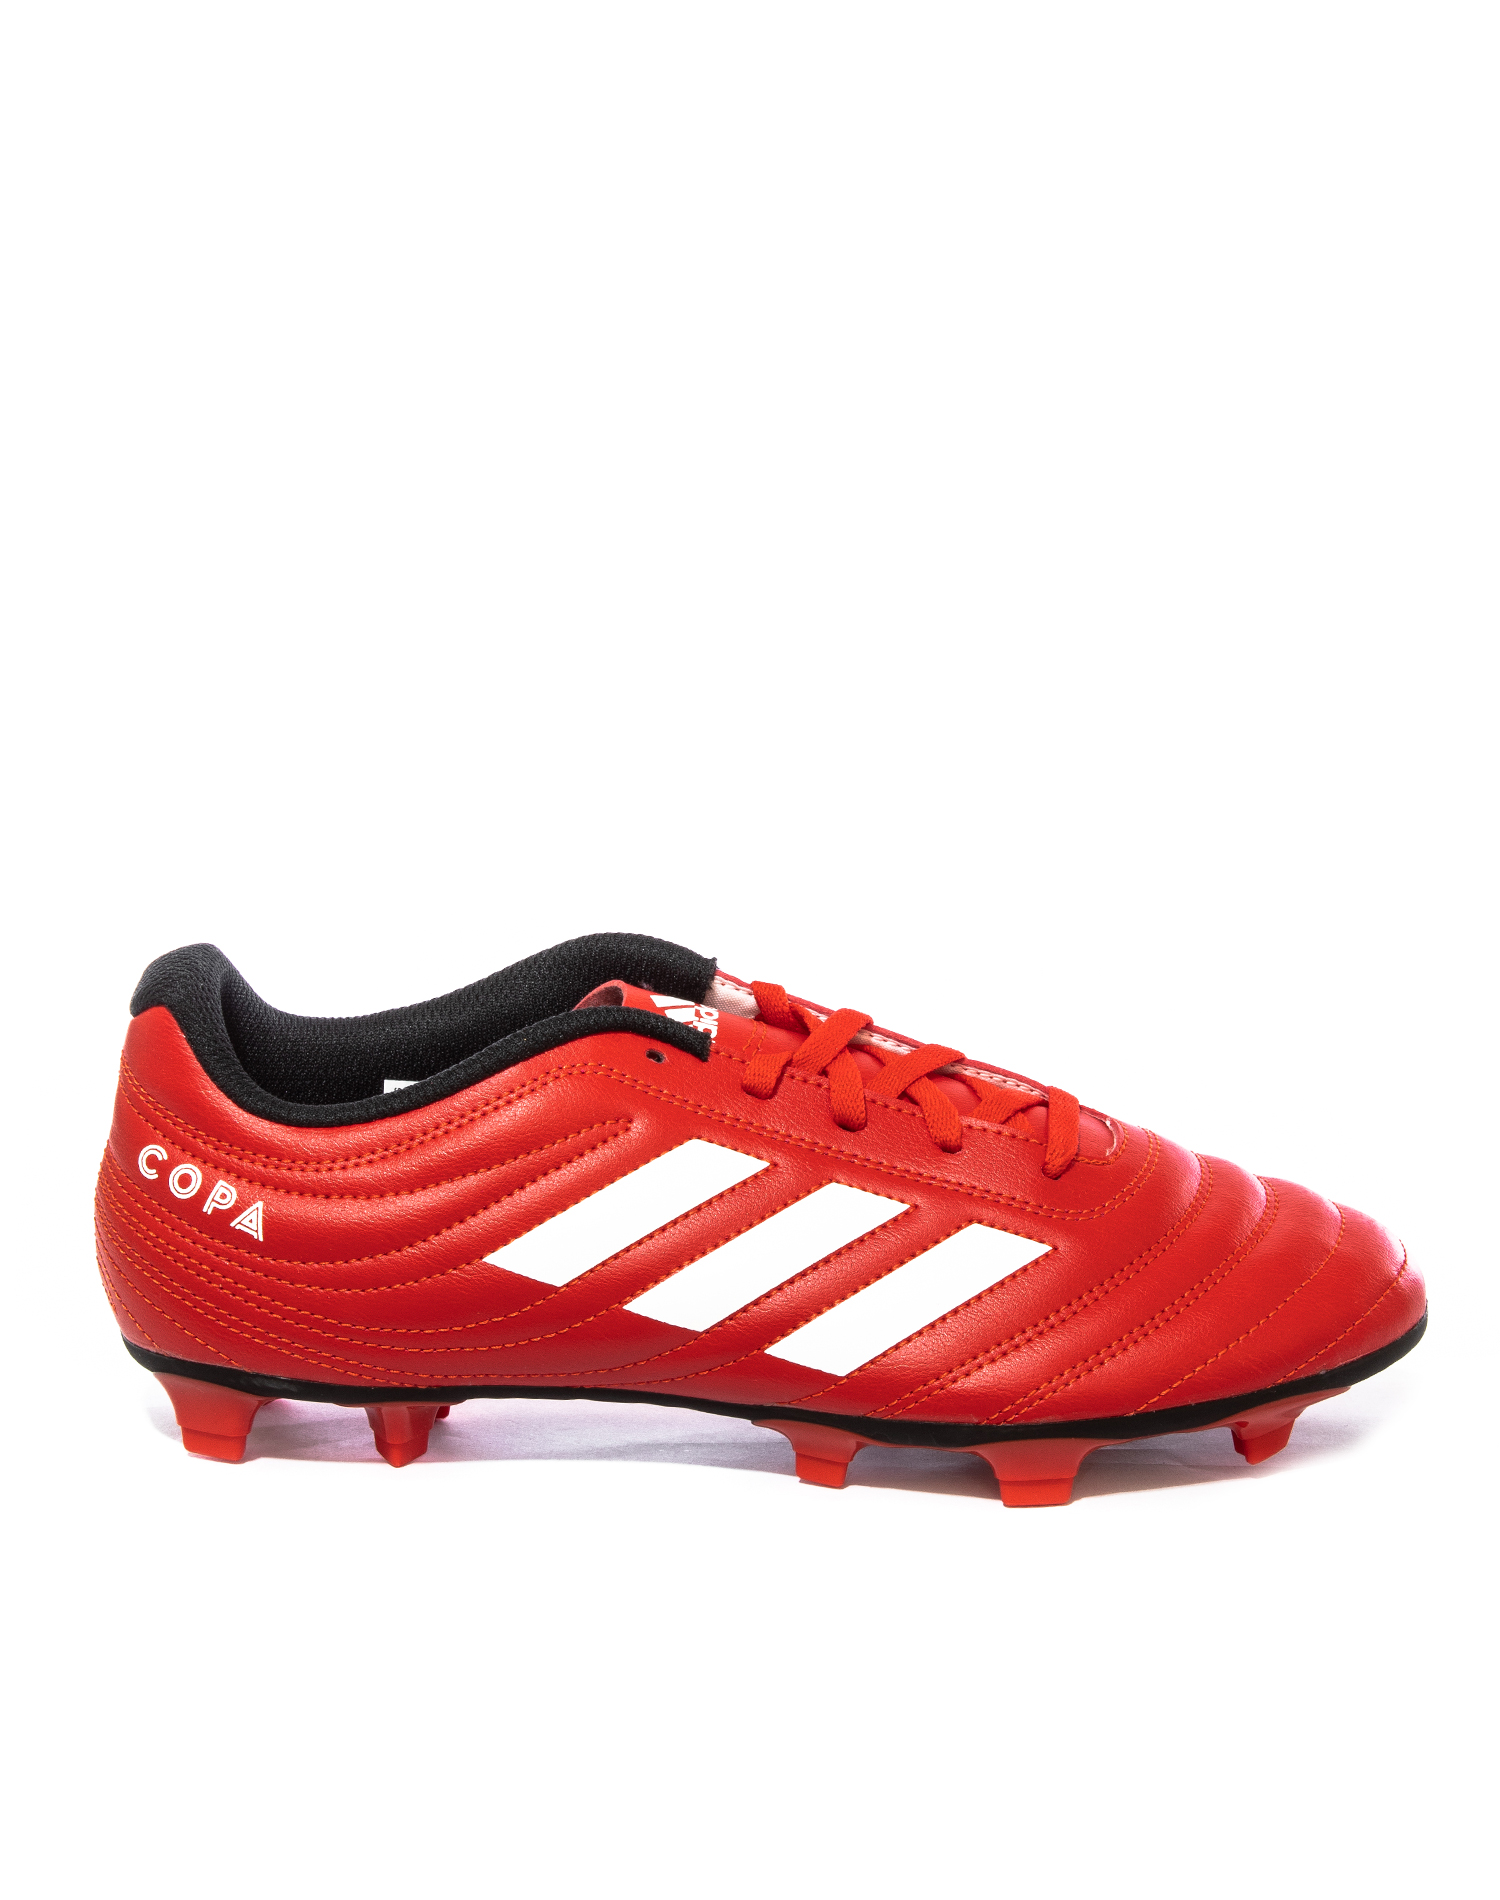 Zapatos de Futbol Adidas Rojo - Golero Sport